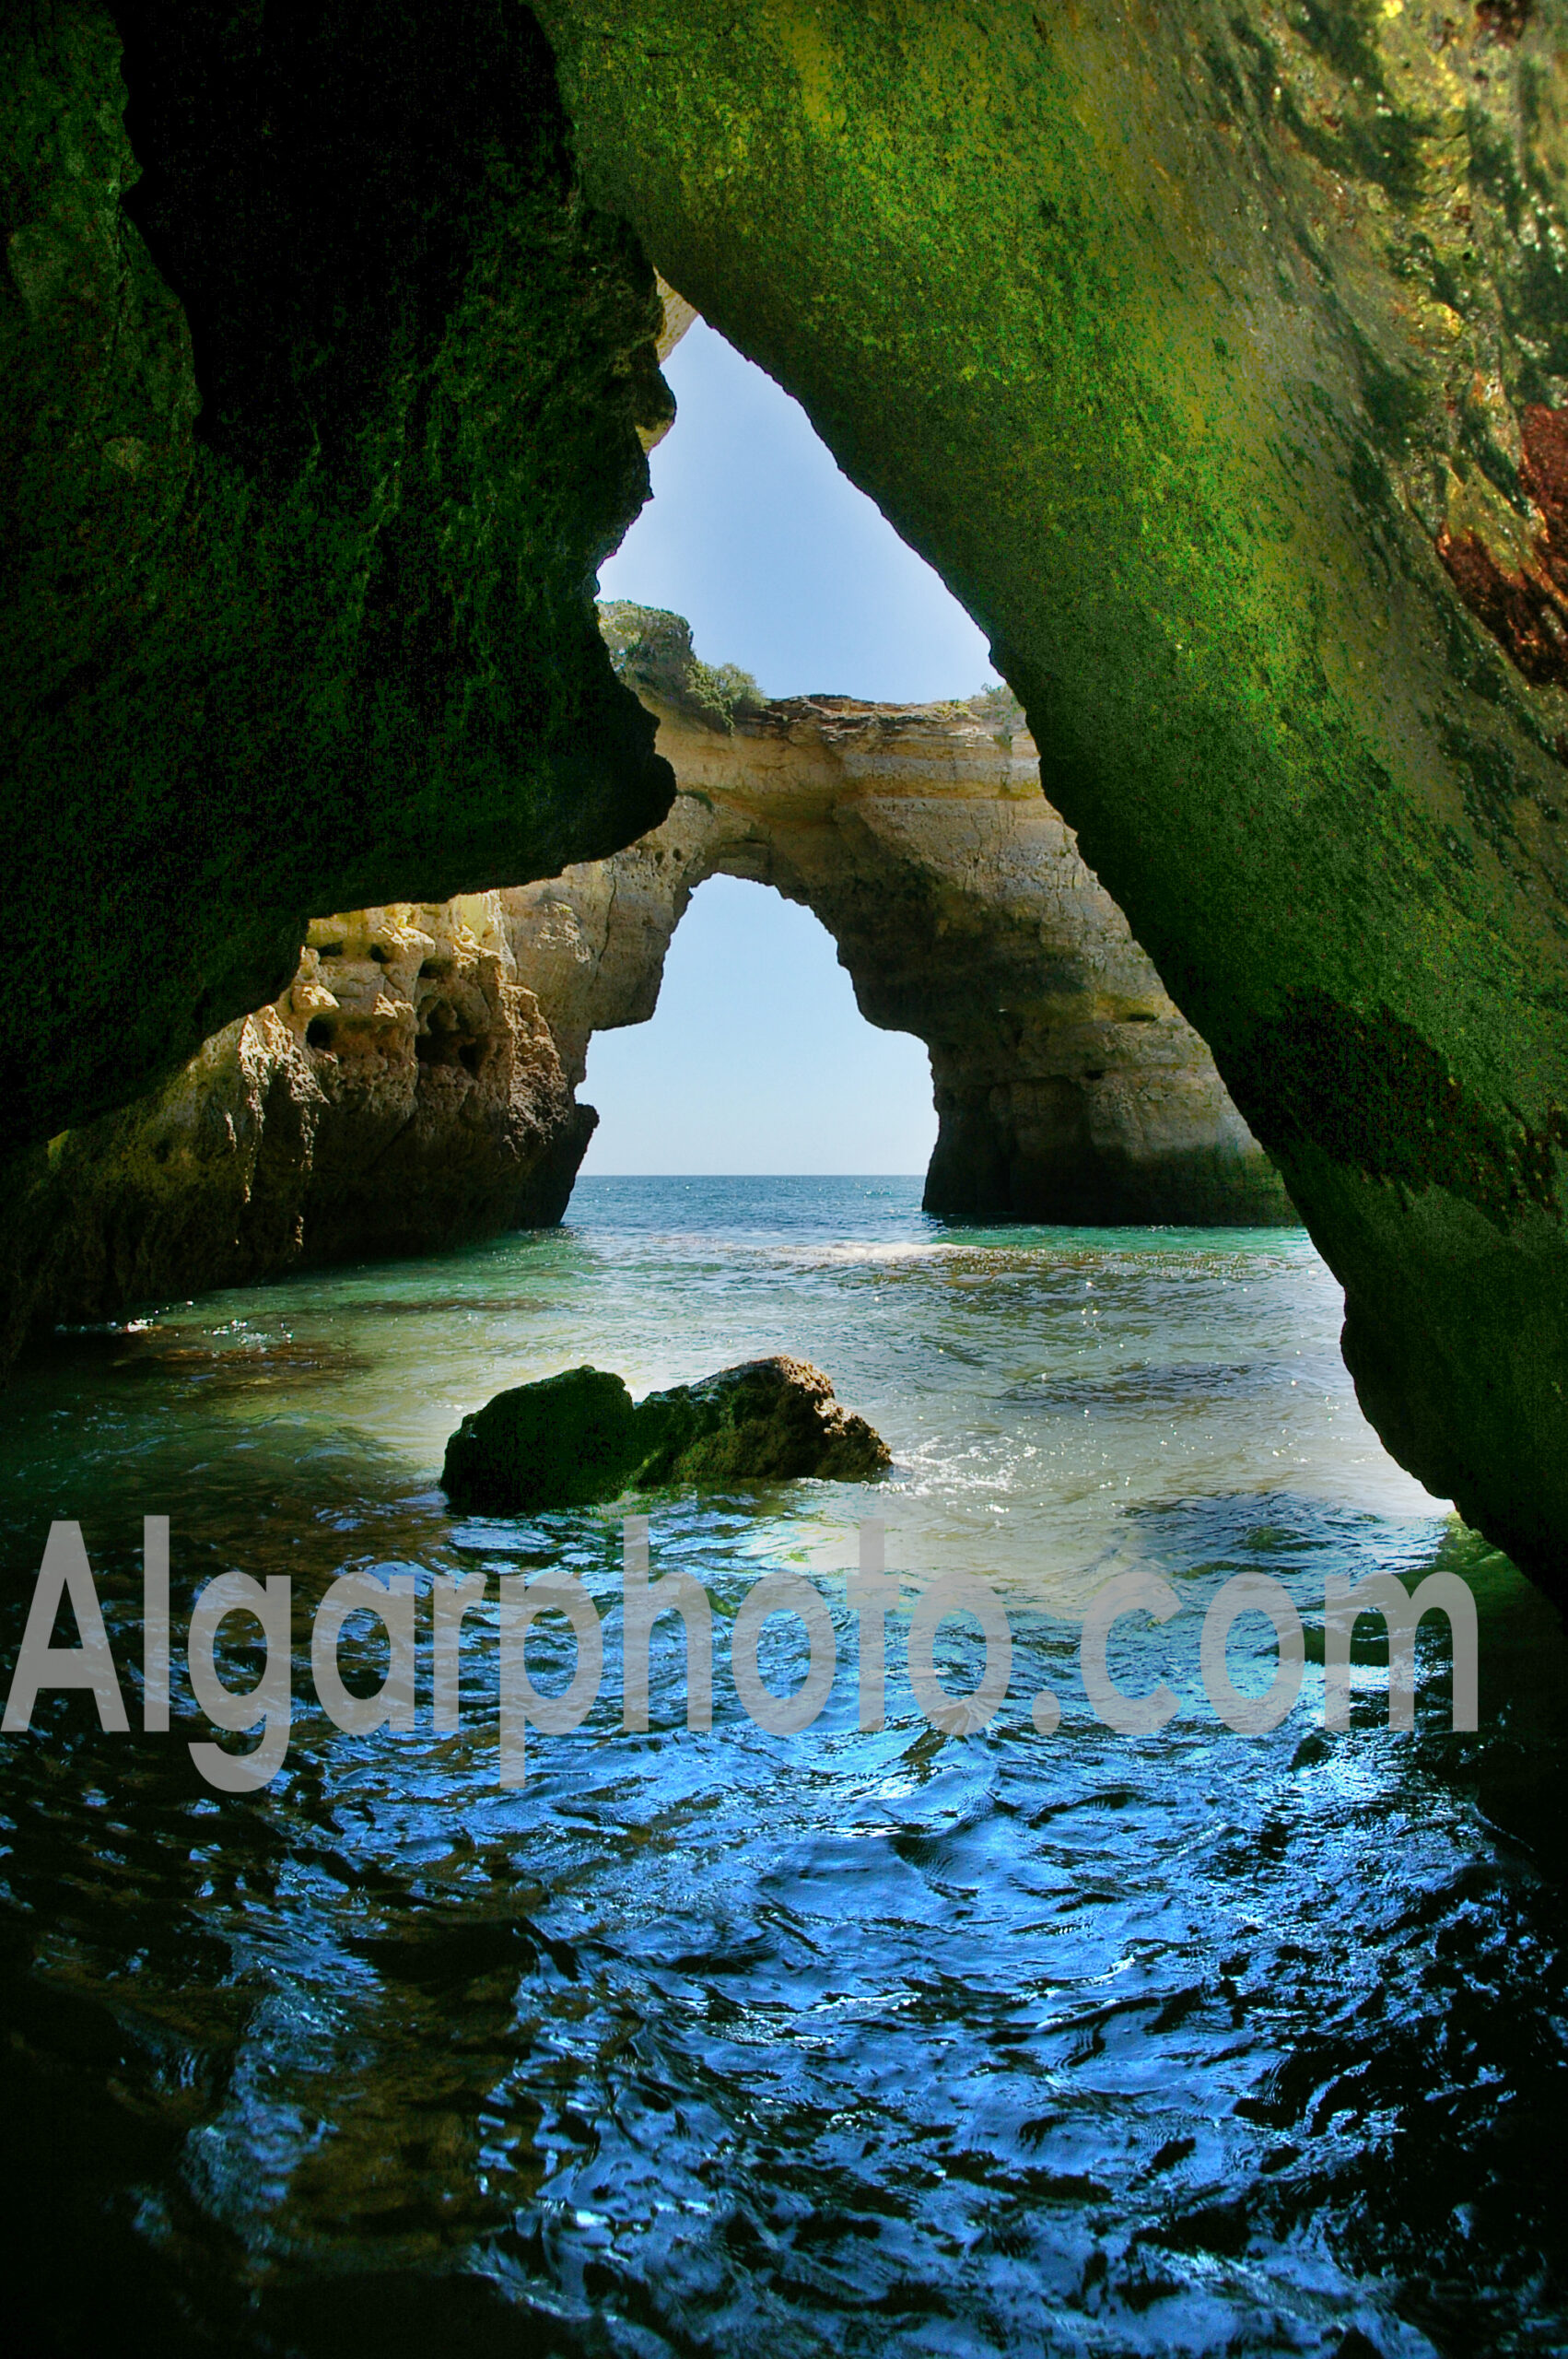 Algarve photography colour seascape image